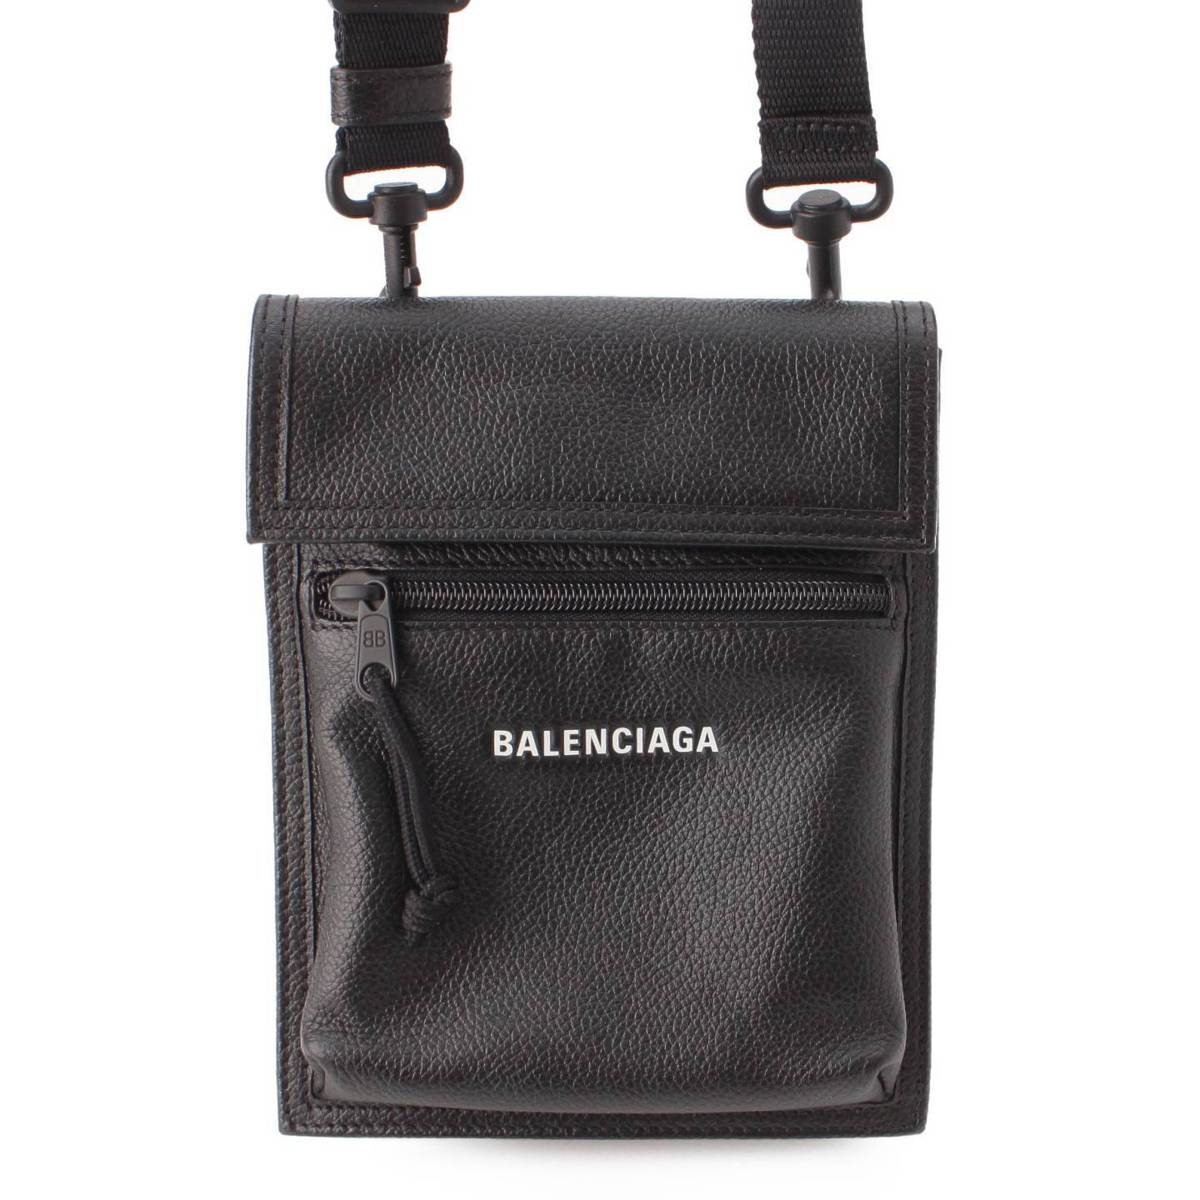 【バレンシアガ】Balenciaga エクスプローラー ロゴ レザー ポシェット ショルダーバッグ 655982 ブラック 【中古】【鑑定済 正規品保証】204671